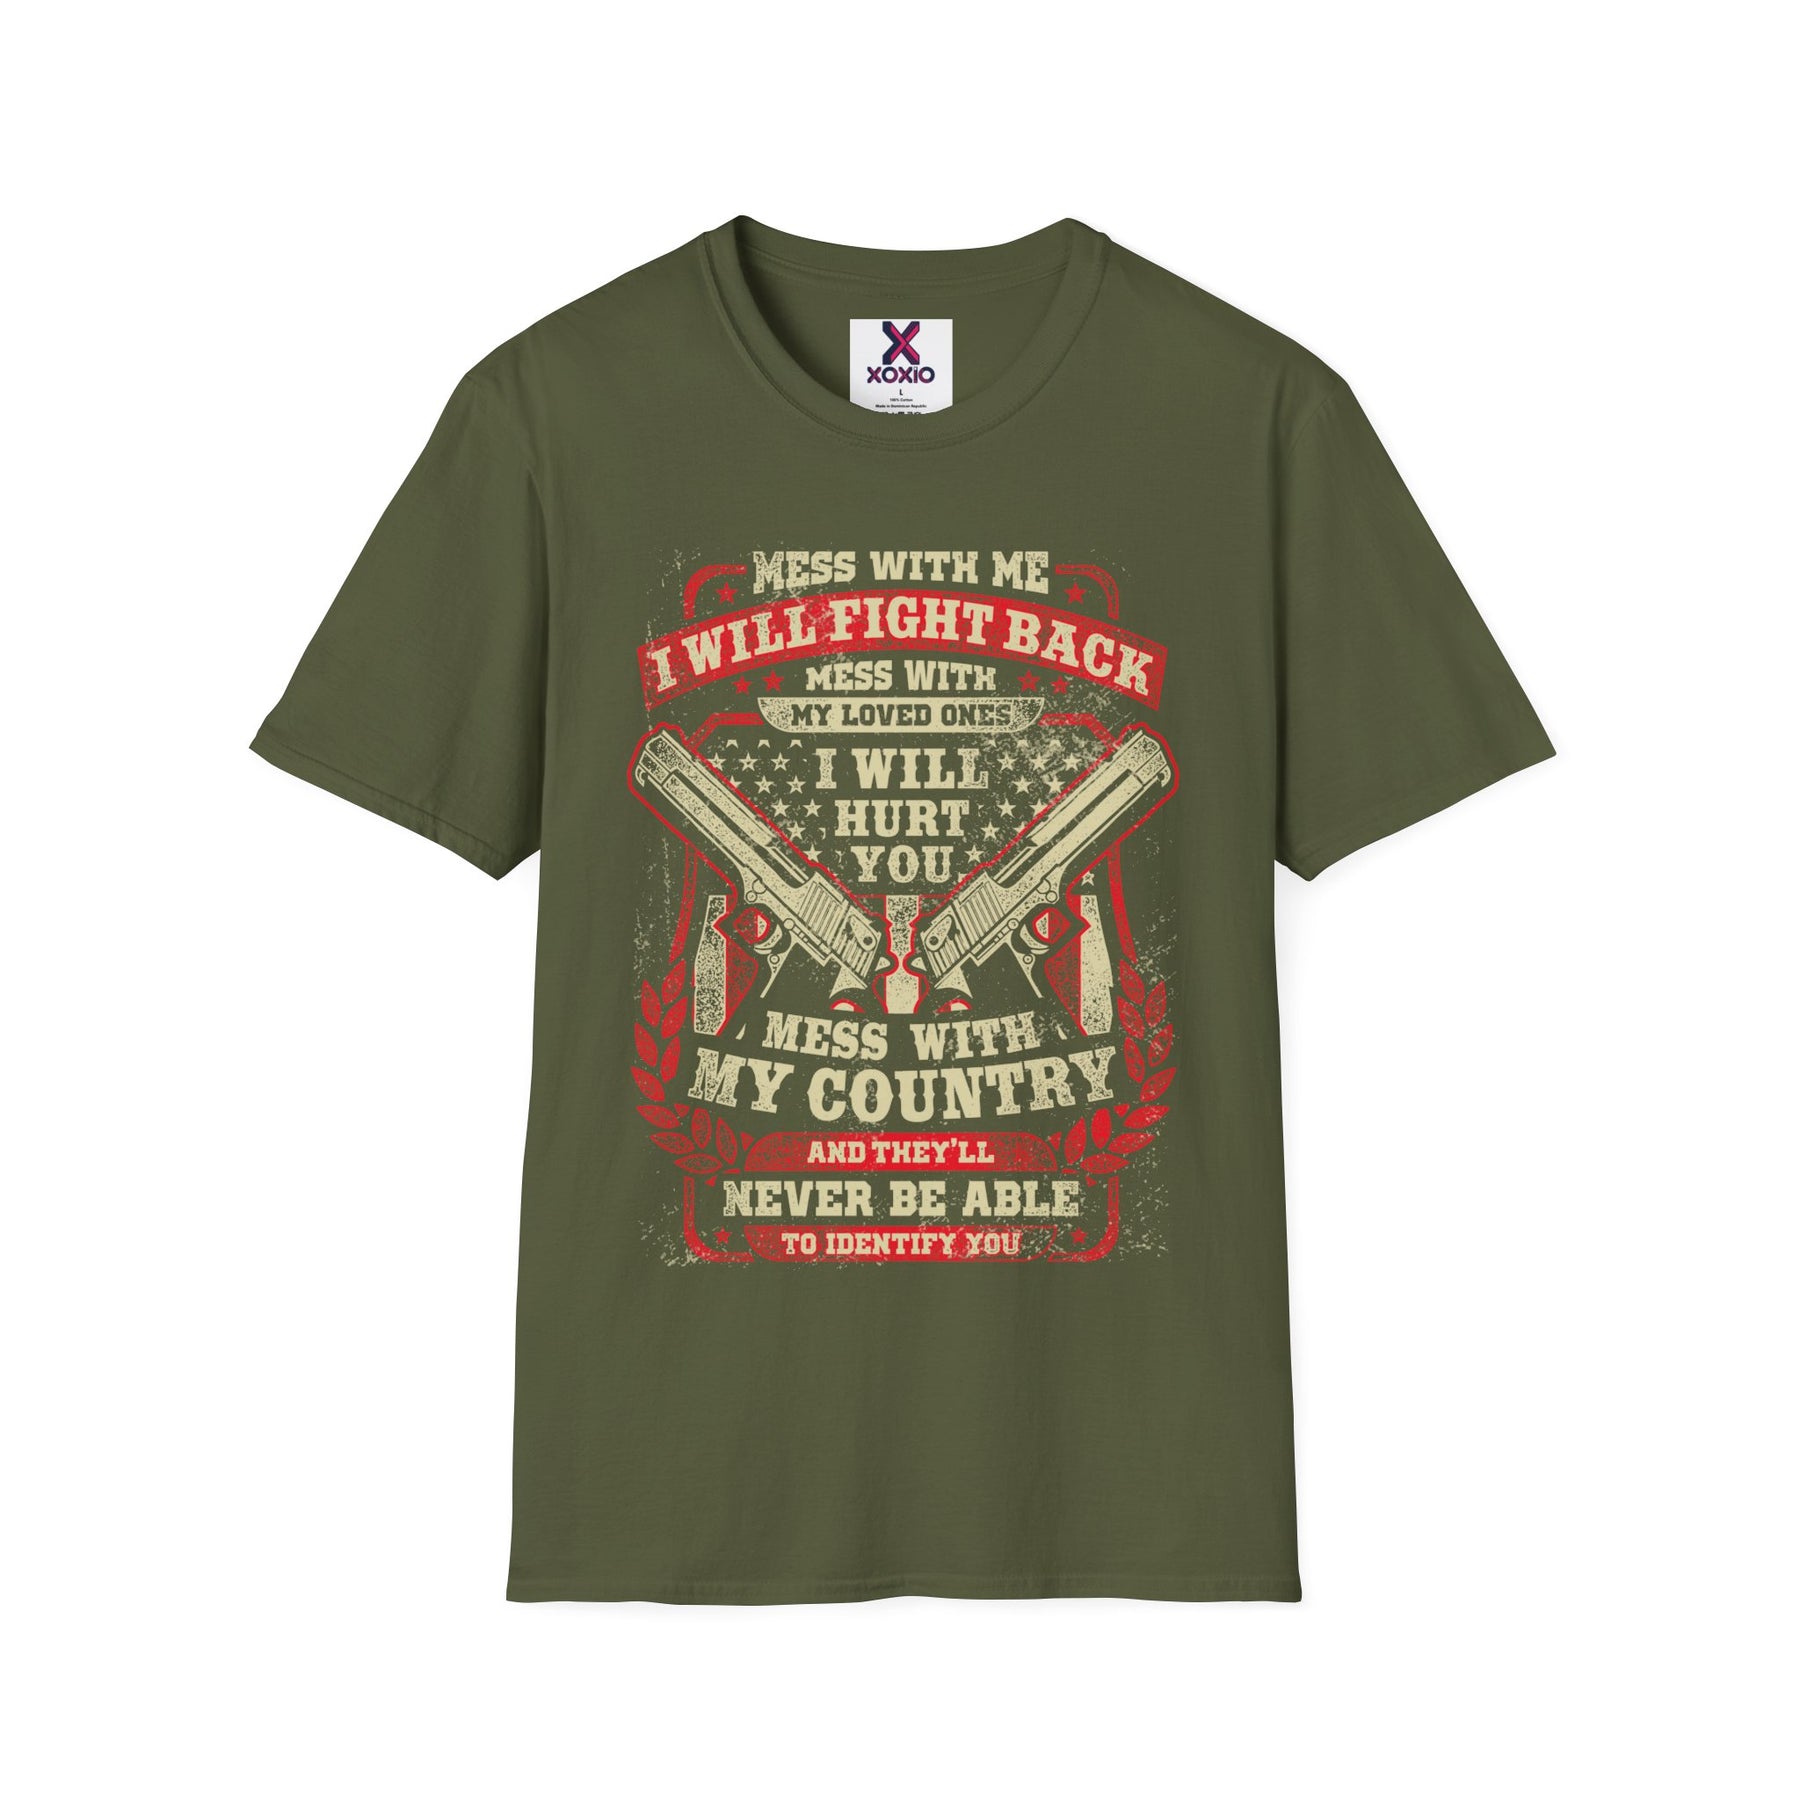 Veteran T-shirt / Proud Veteran T-shirt